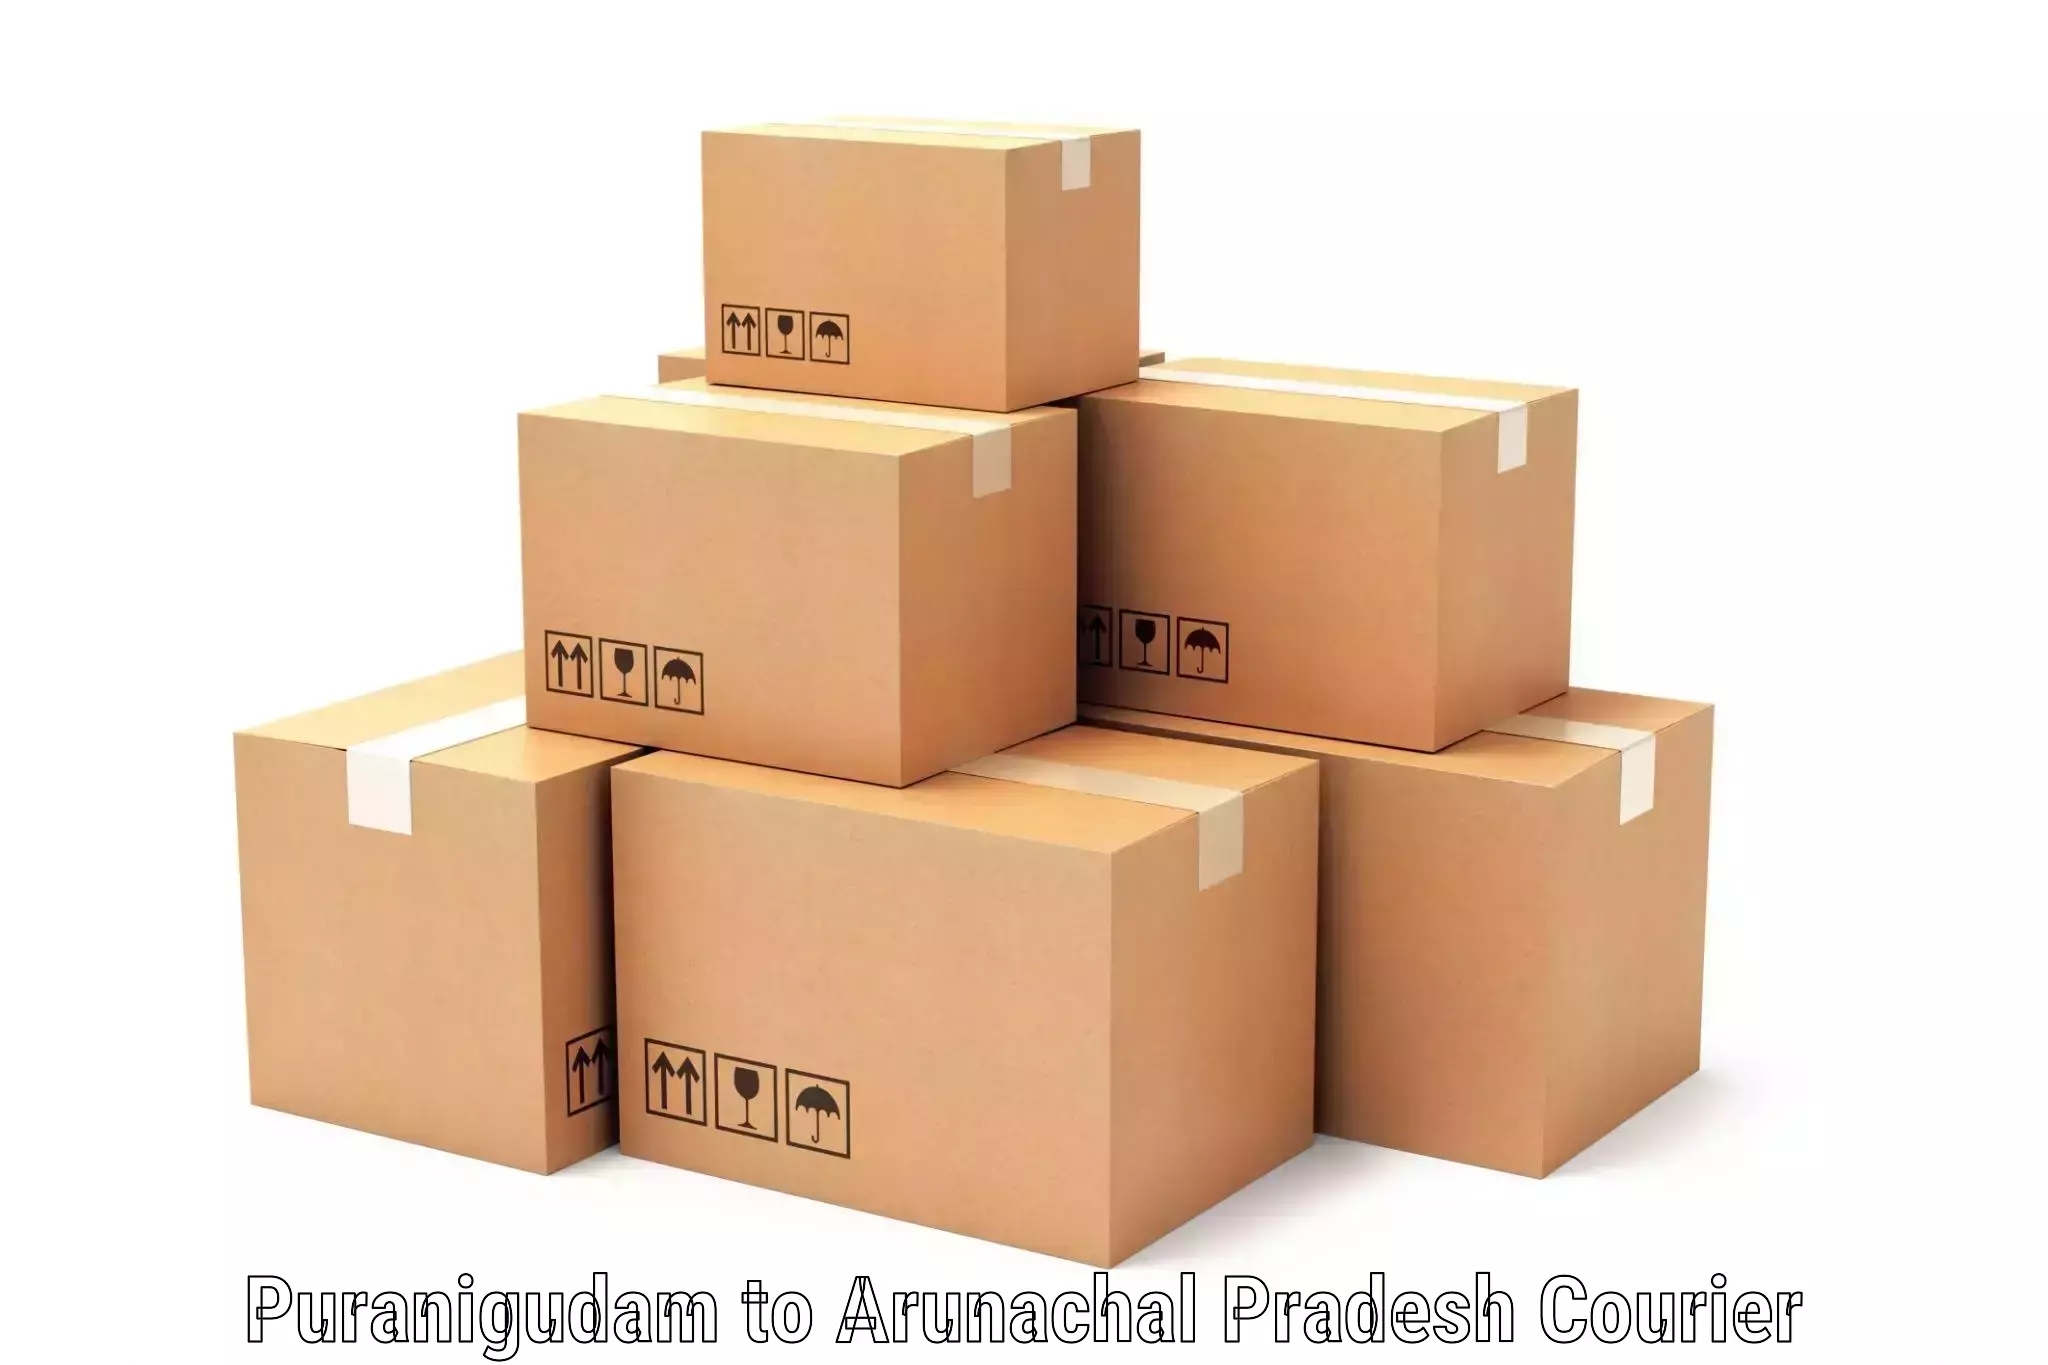 Quick parcel dispatch in Puranigudam to Arunachal Pradesh